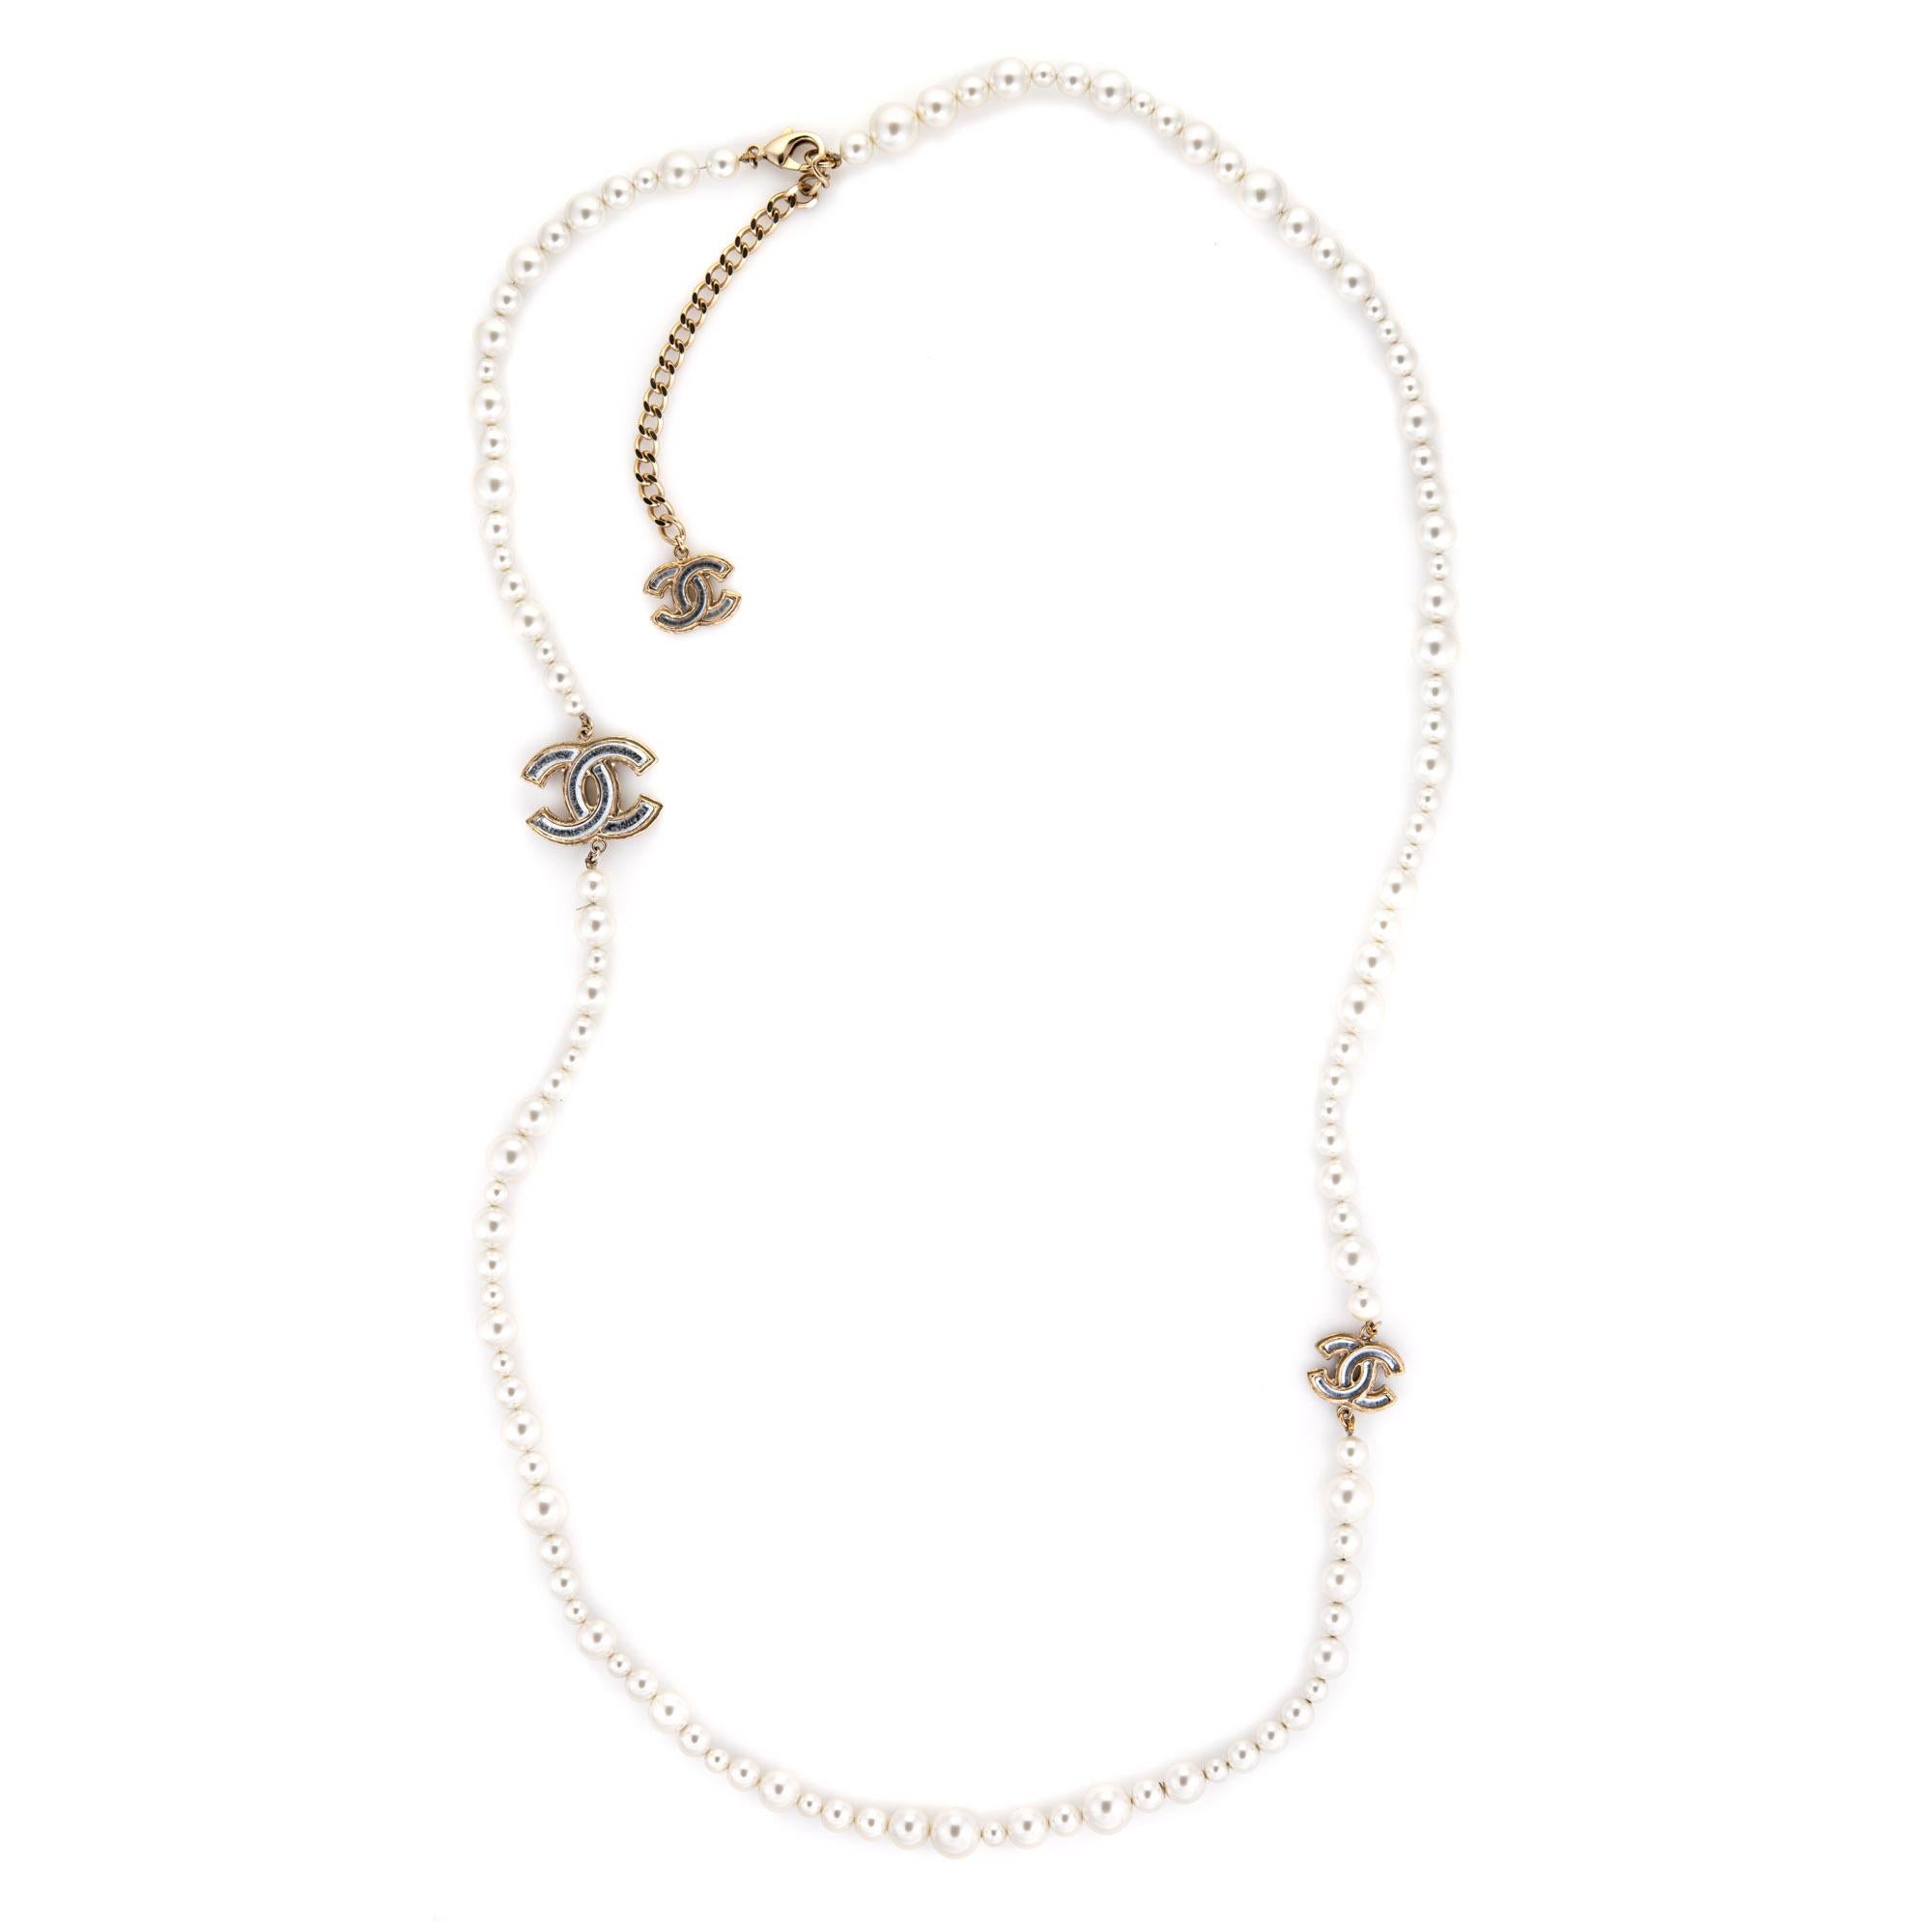 Collier (ou ceinture) en fausses perles graduées Chanel d'occasion en ton argent (circa 2012). 

Le collier comporte des fausses perles blanches graduées de 6 à 12 mm. Deux logos CC séparent les perles. Le collier peut être porté comme une longue